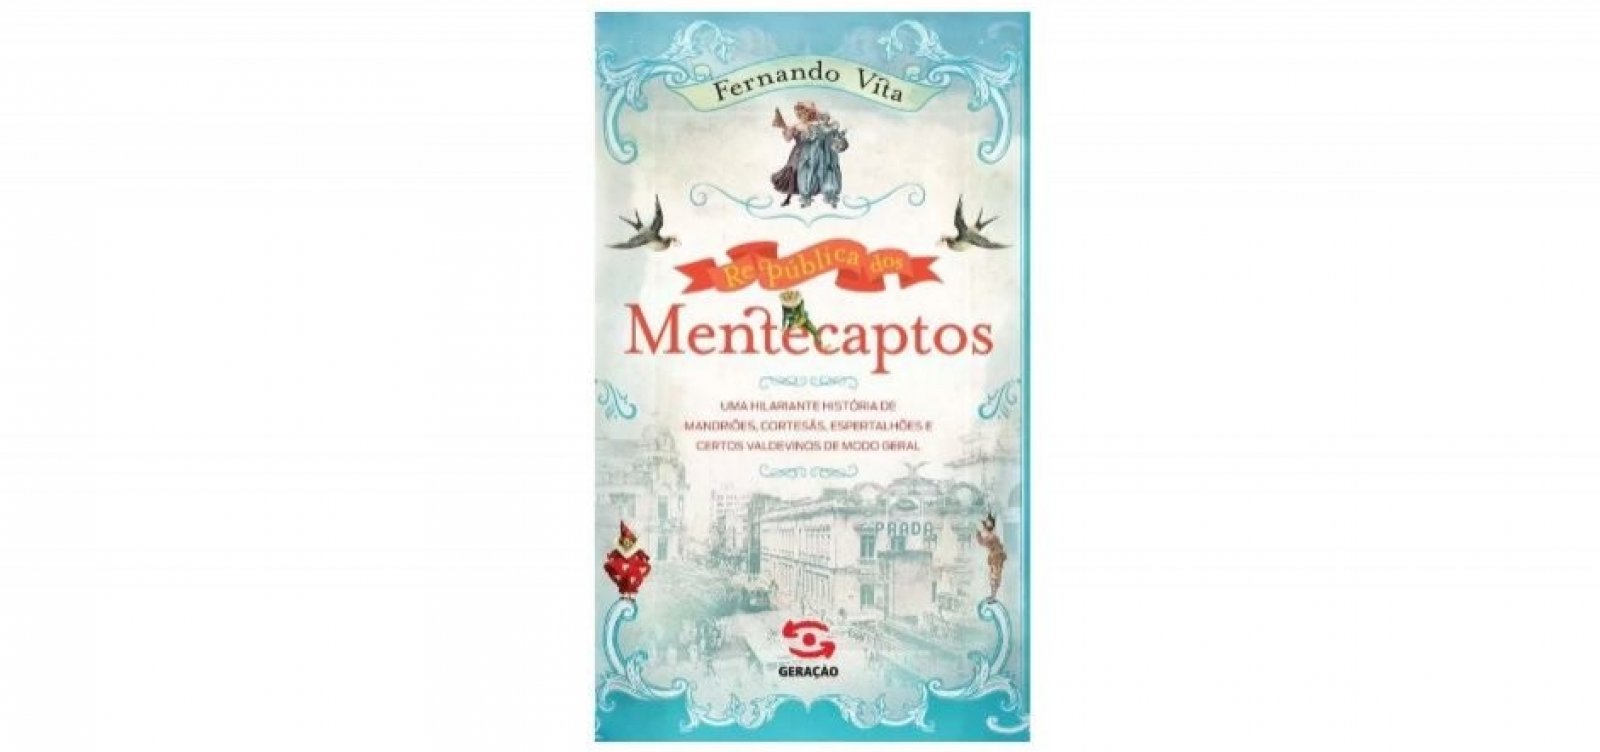 'República Dos Mentecaptos': novo livro de Fernando Vita será lançado em agosto